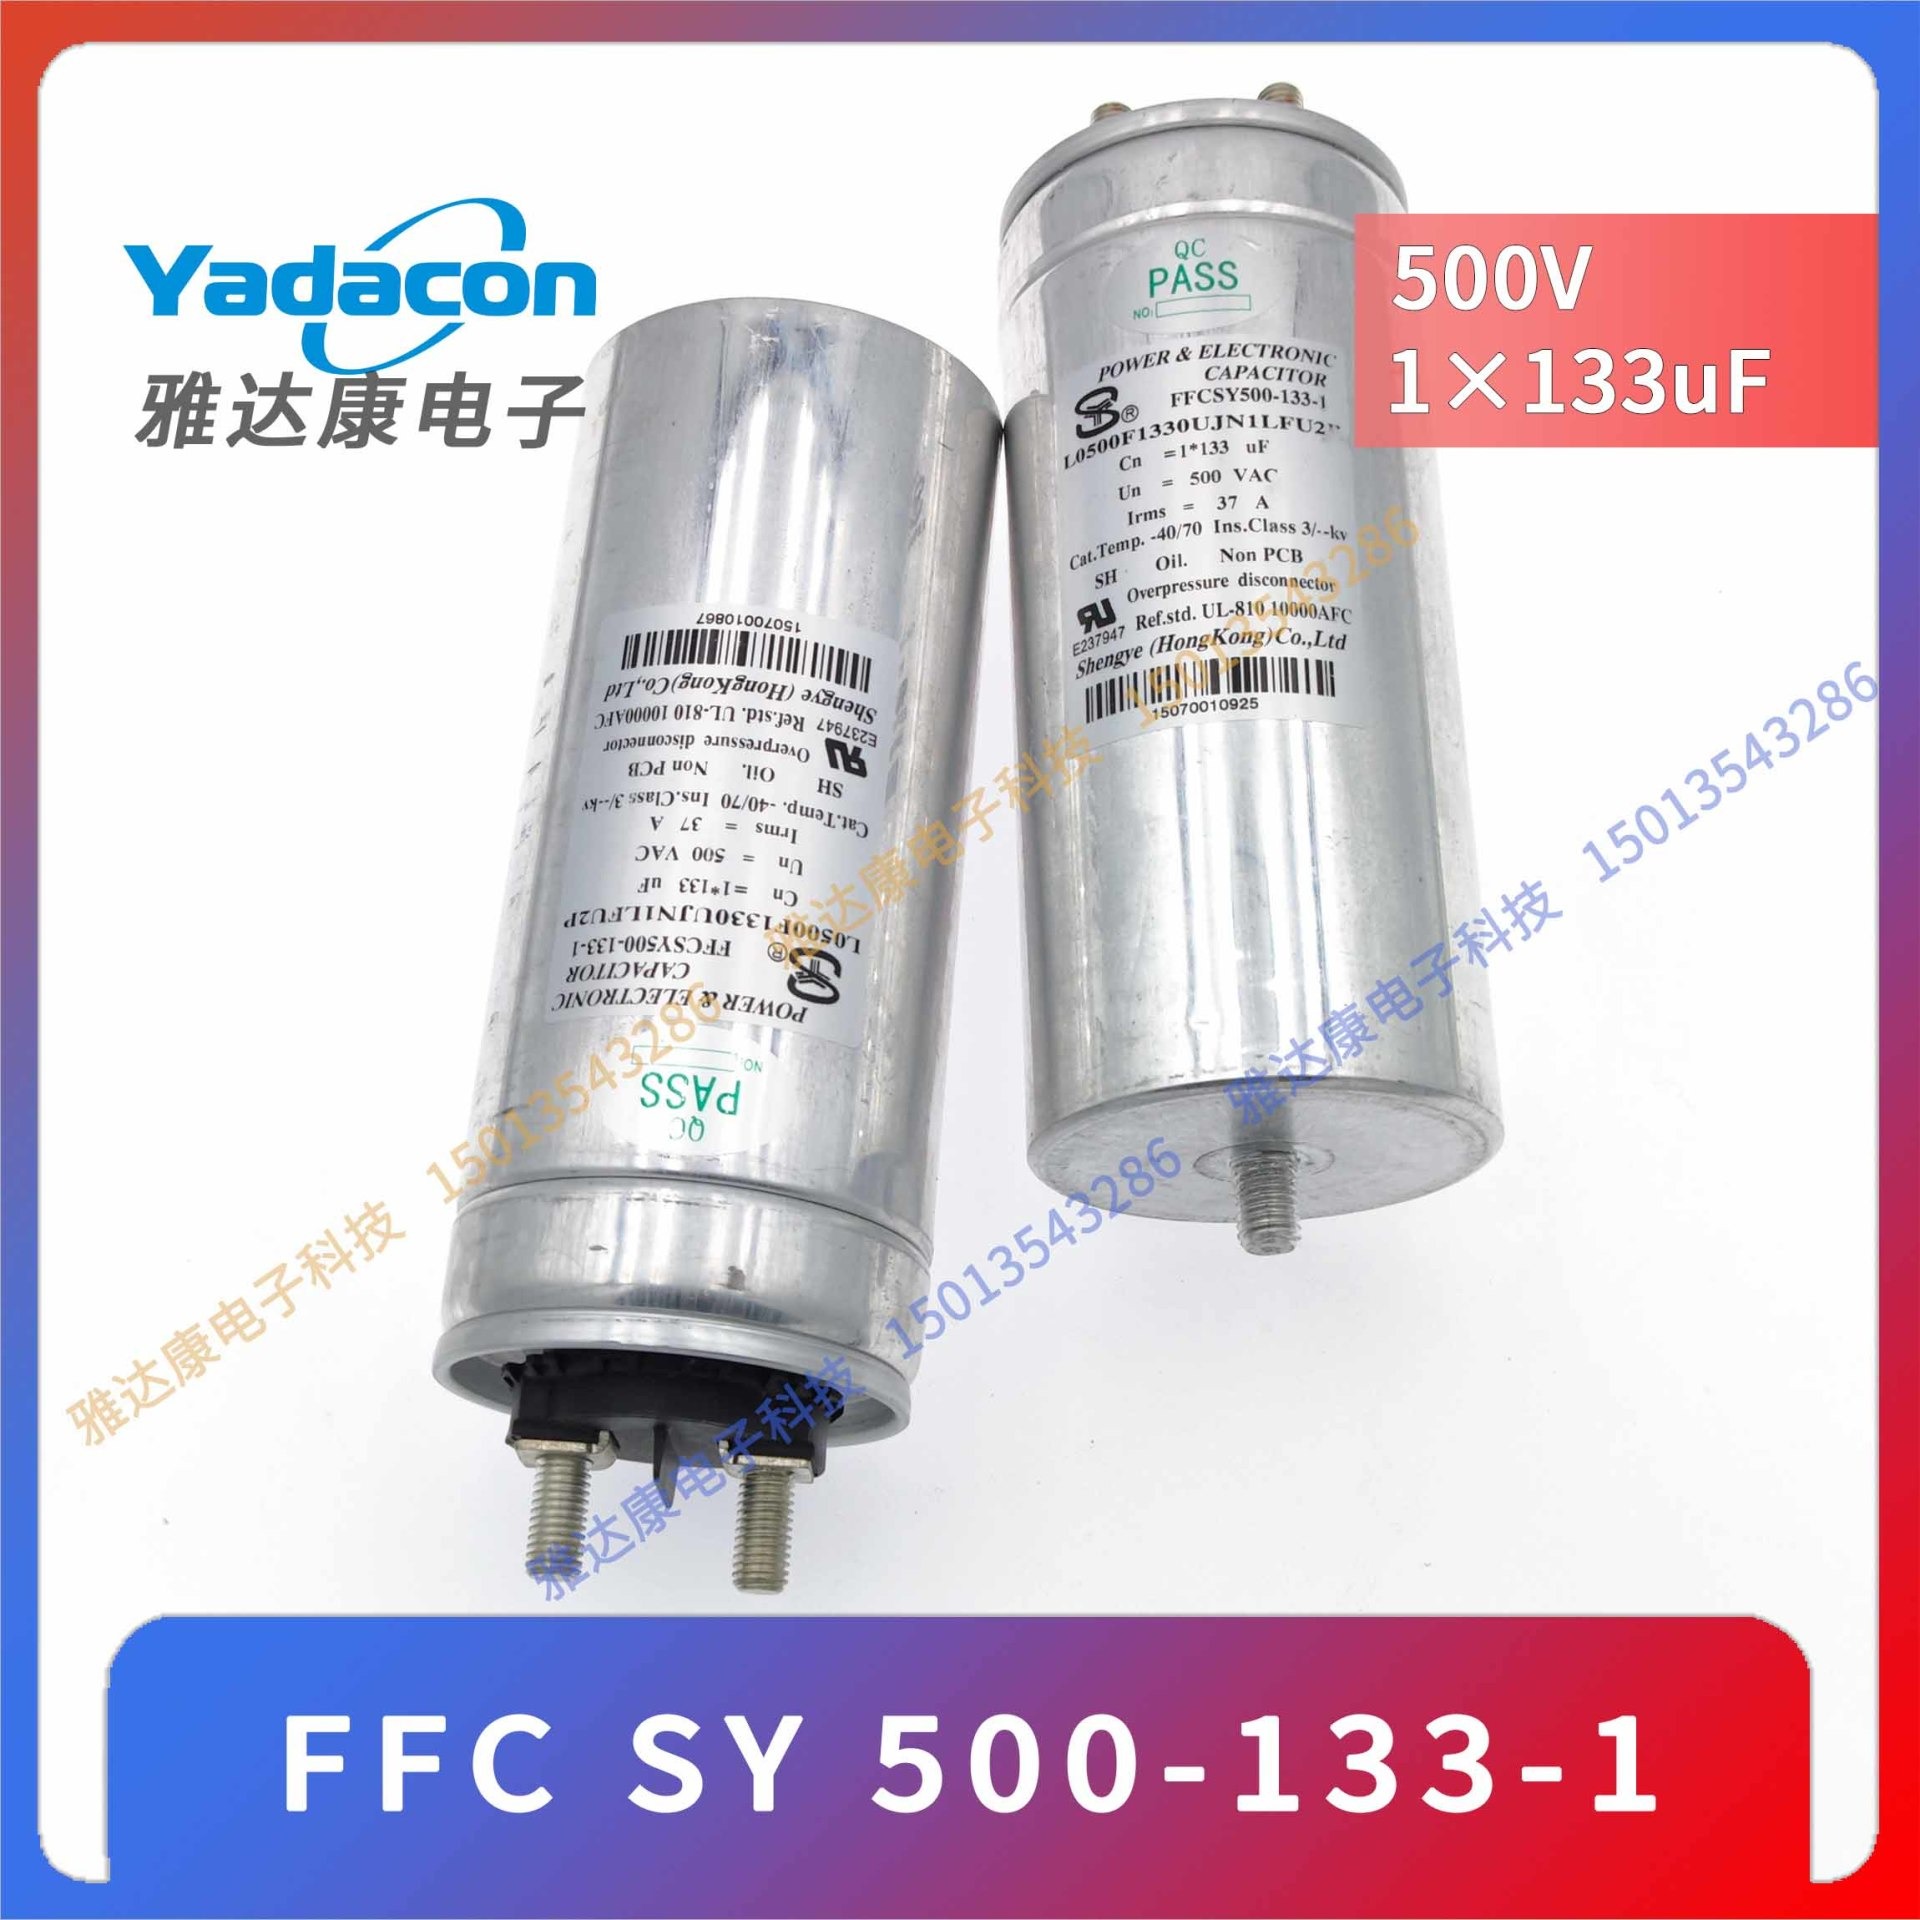 胜业电容器 FFC SY 500-133-1 500v 1×133uF薄膜电容 电力电容图片